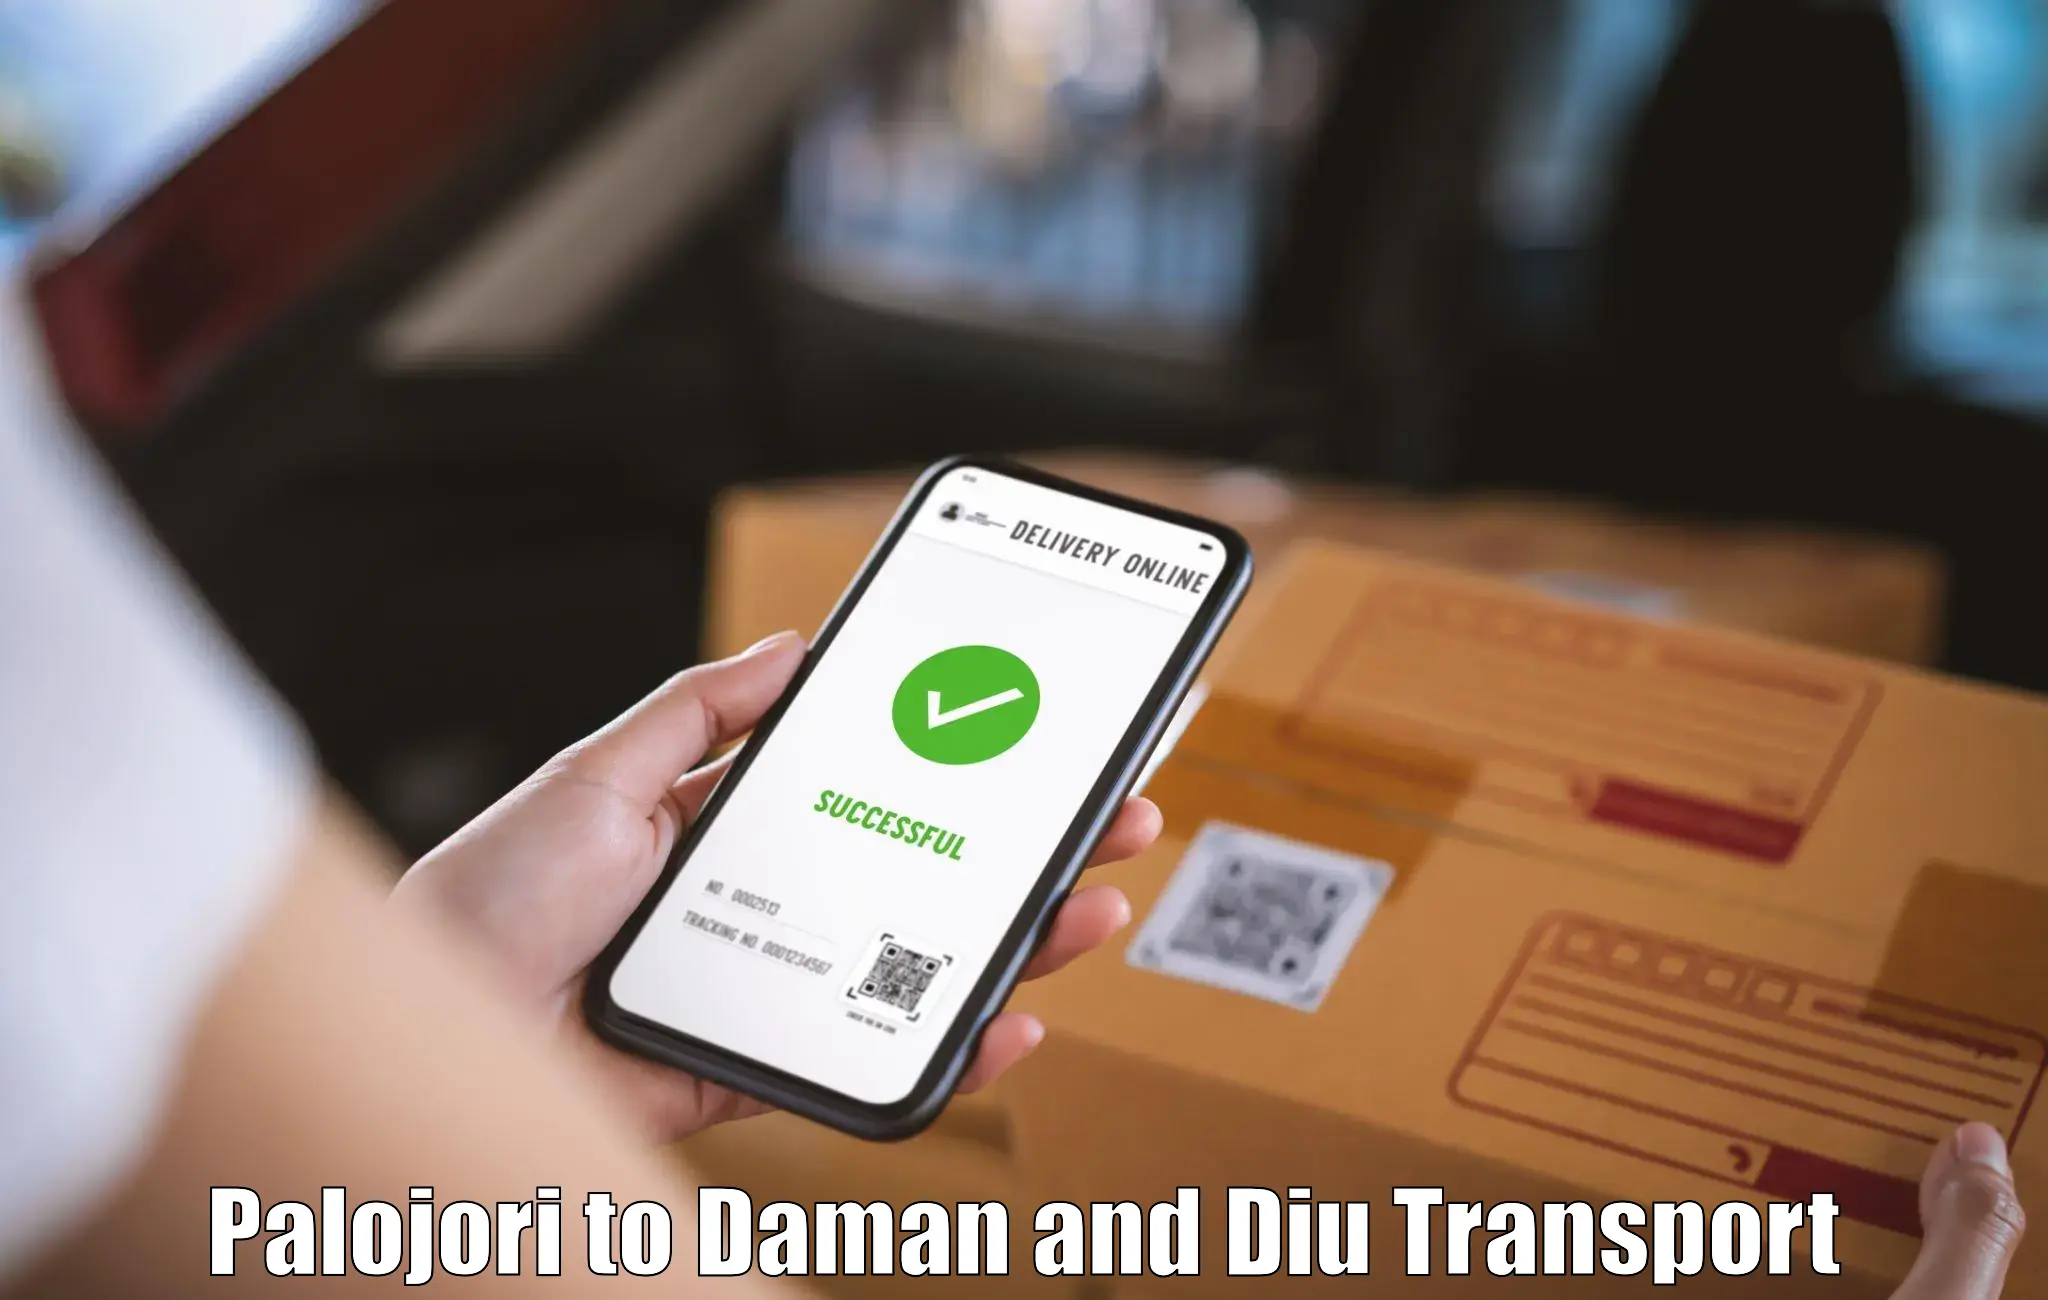 Land transport services Palojori to Daman and Diu